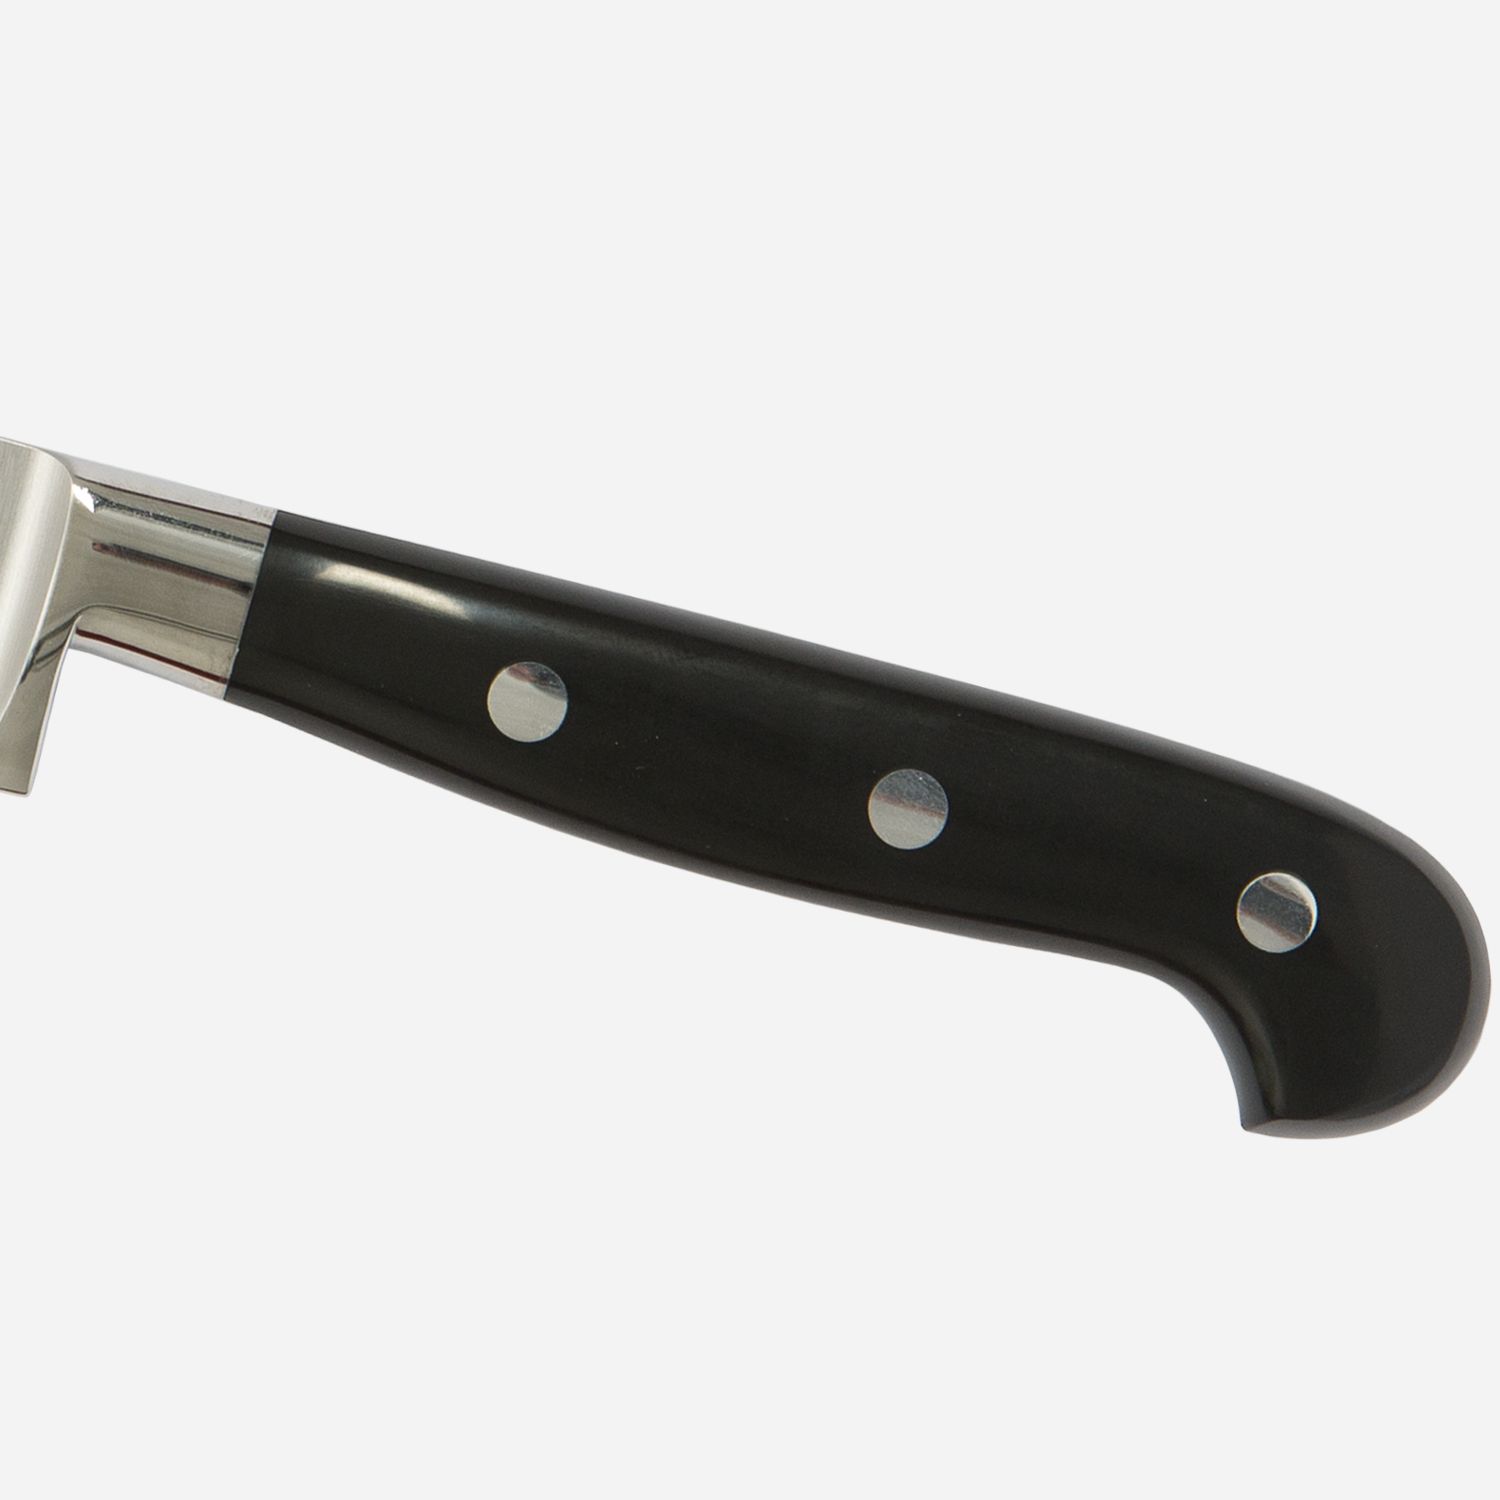 Carving knife cm.22 Stainless Steel Berkel Adhoc Handle Glossy Black Resin